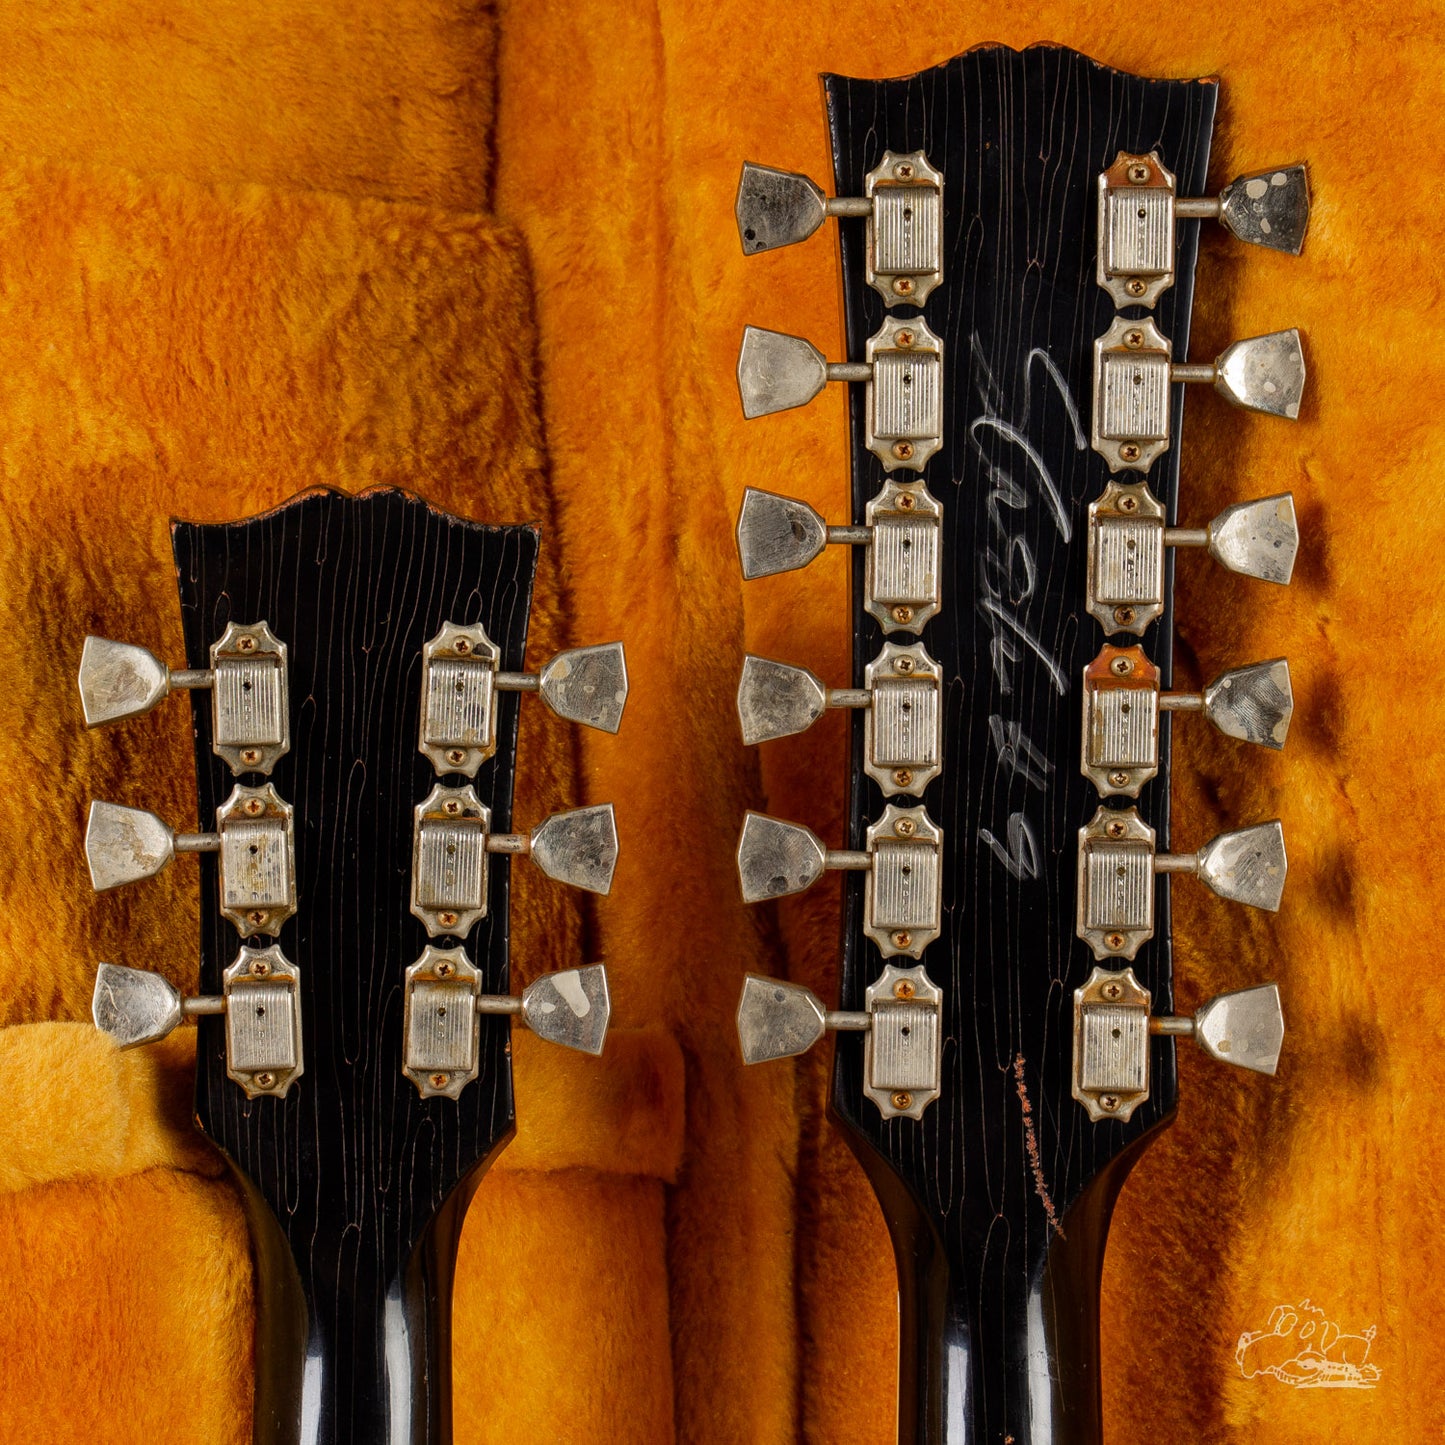 2019 Gibson Custom Shop Slash 1966 EDS-1275 Doubleneck Aged/Signed SG - Make an Offer